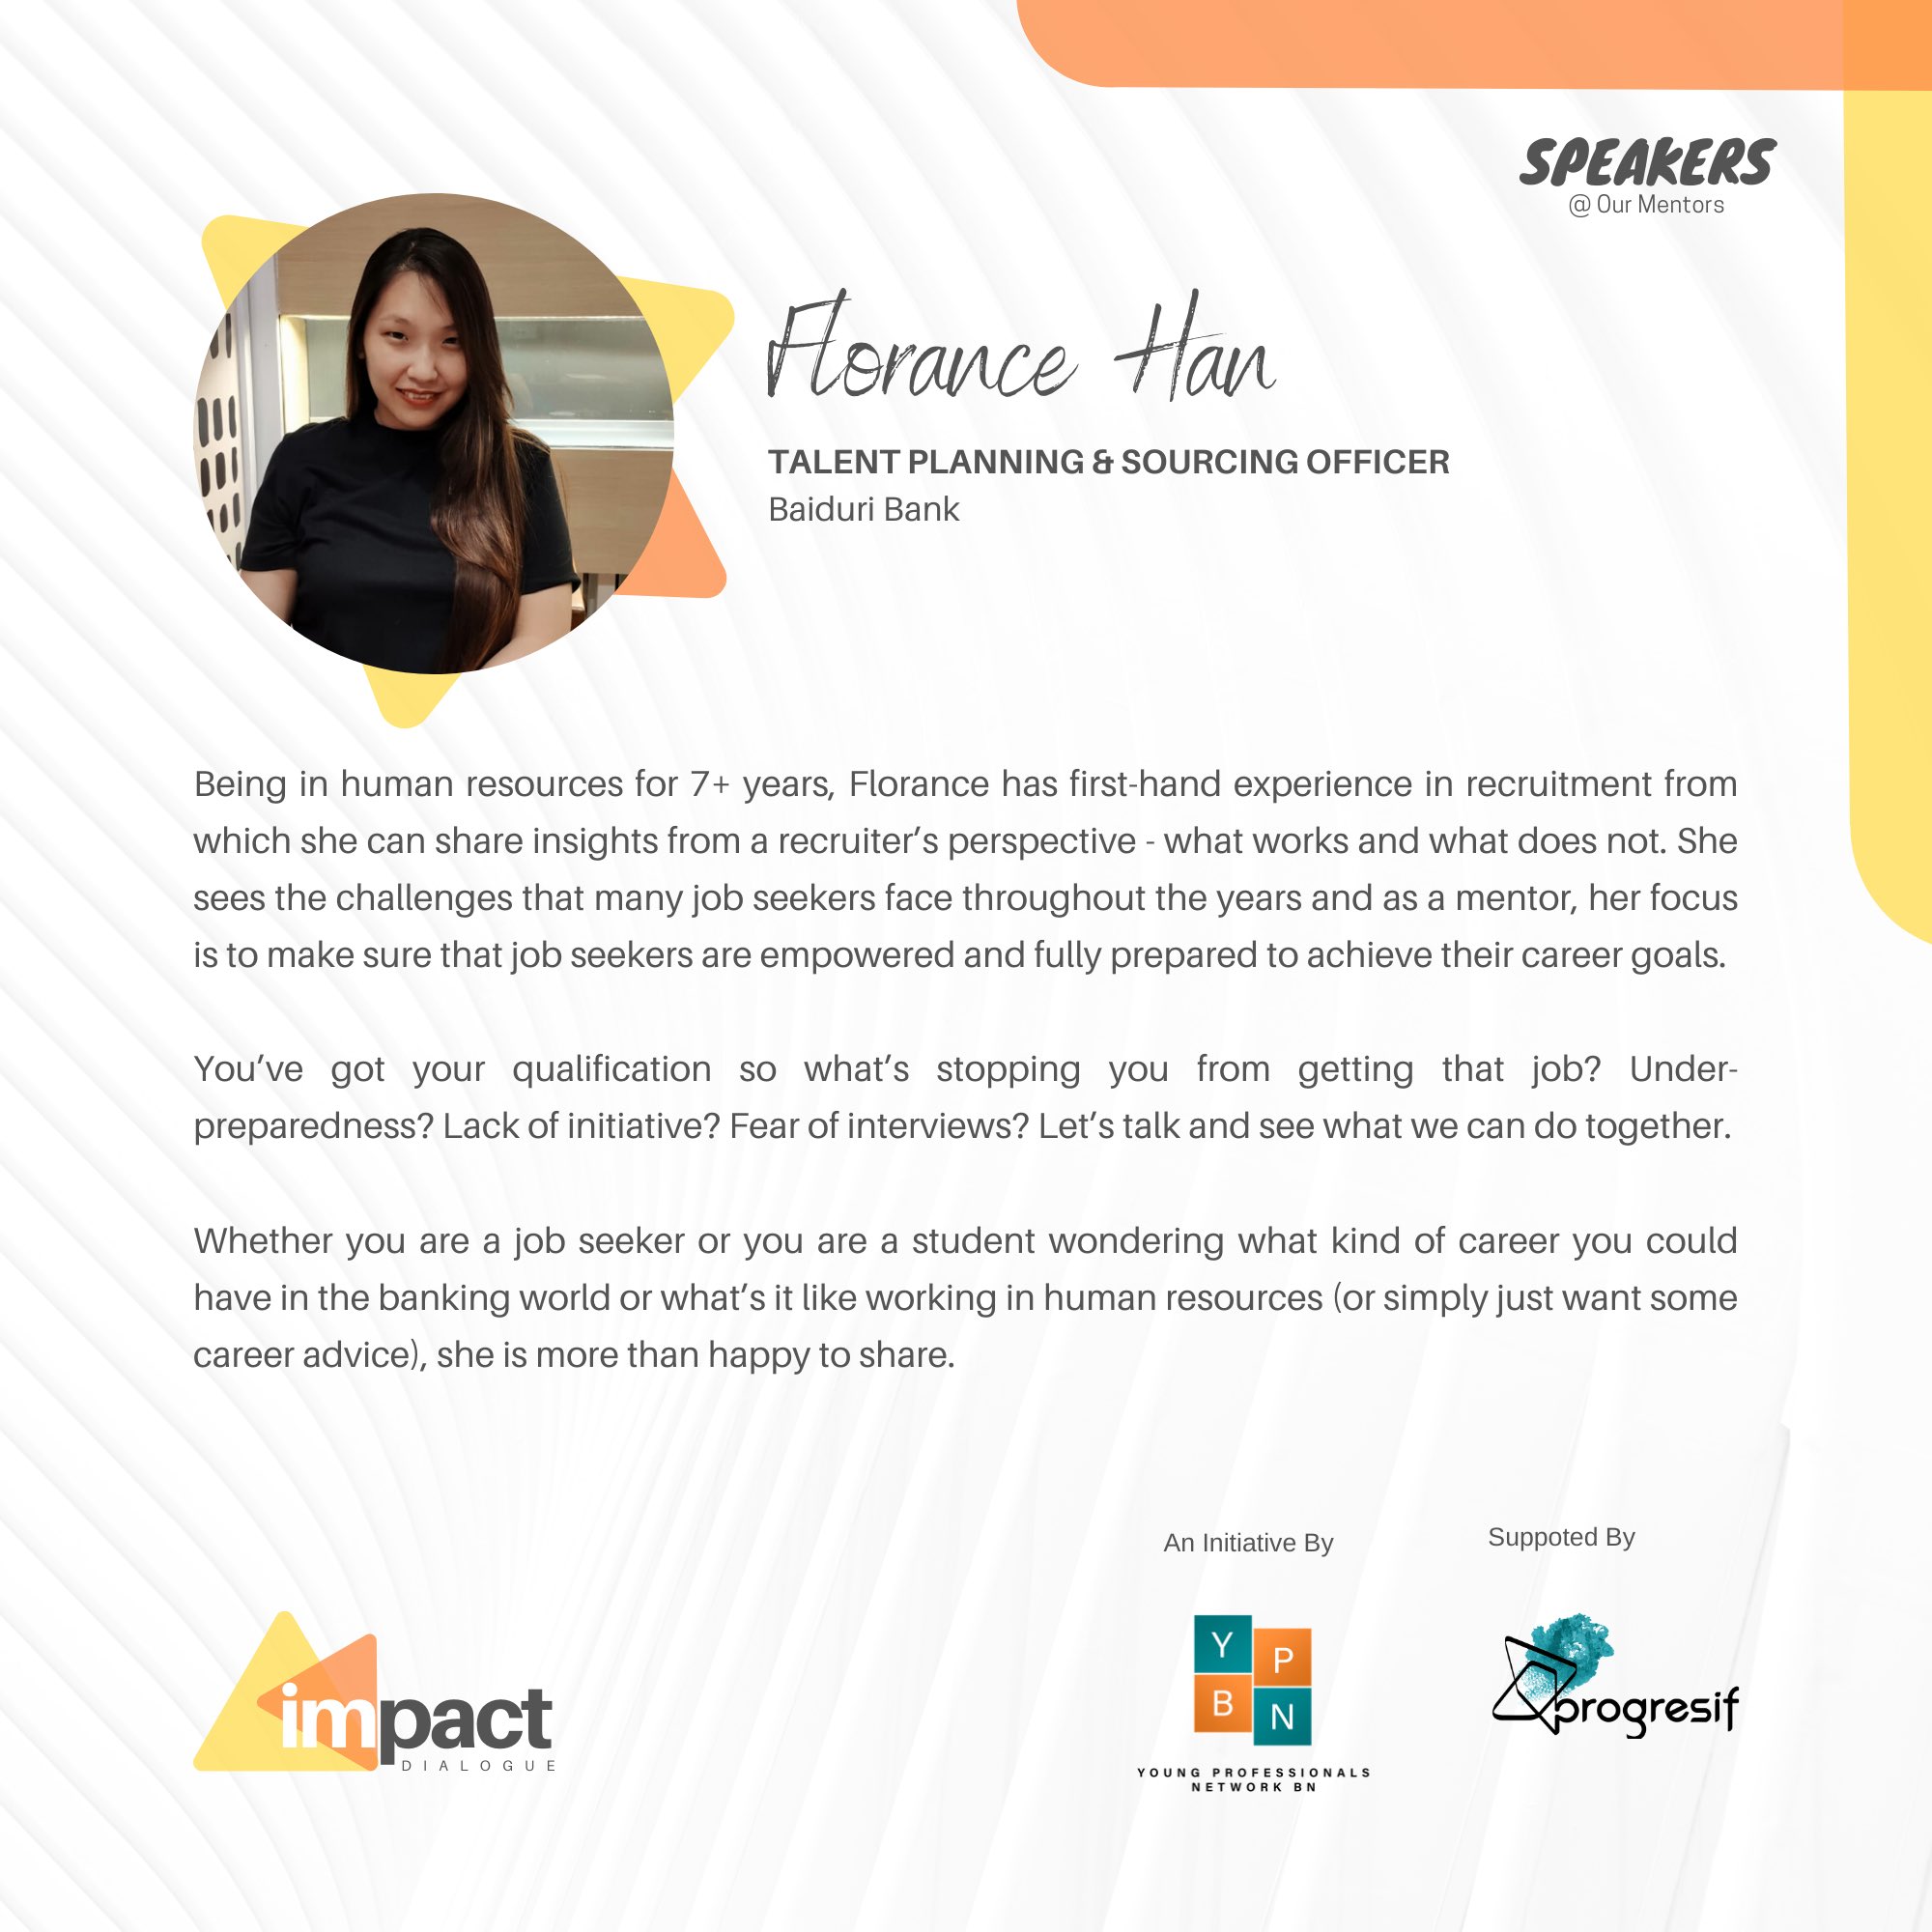 تويتر \ Young Professionals Network Brunei على تويتر: "Impact Dialogue Mentor - Florance With more than 7years of experience talent acquisition, she is one of the best in her field of